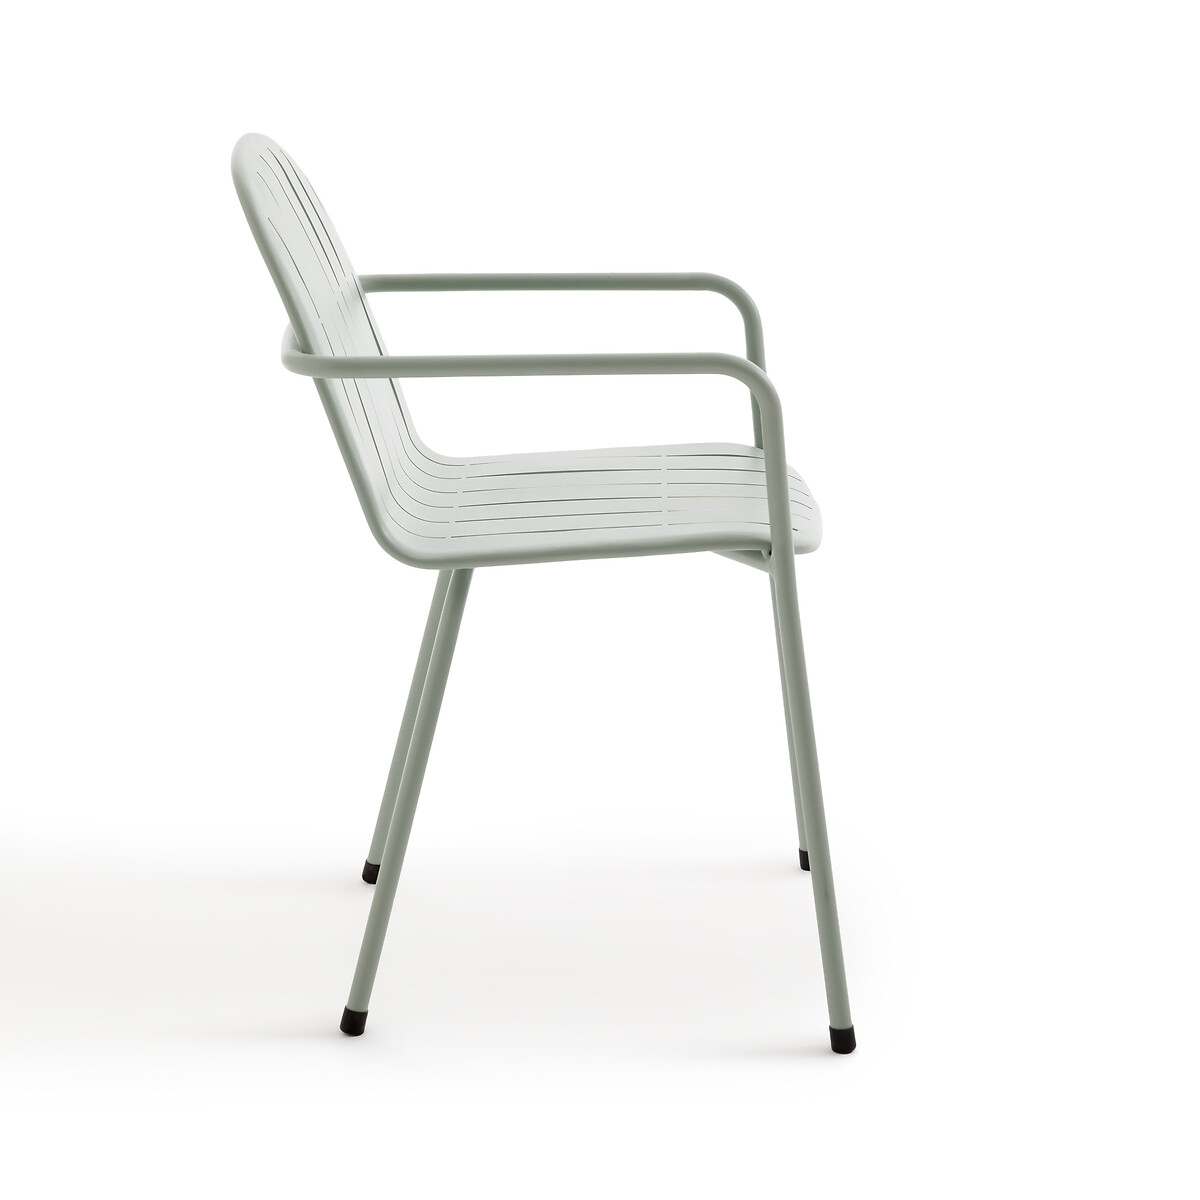 Кресло Для столовой садовое из алюминия Kotanne единый размер зеленый LaRedoute - фото 4